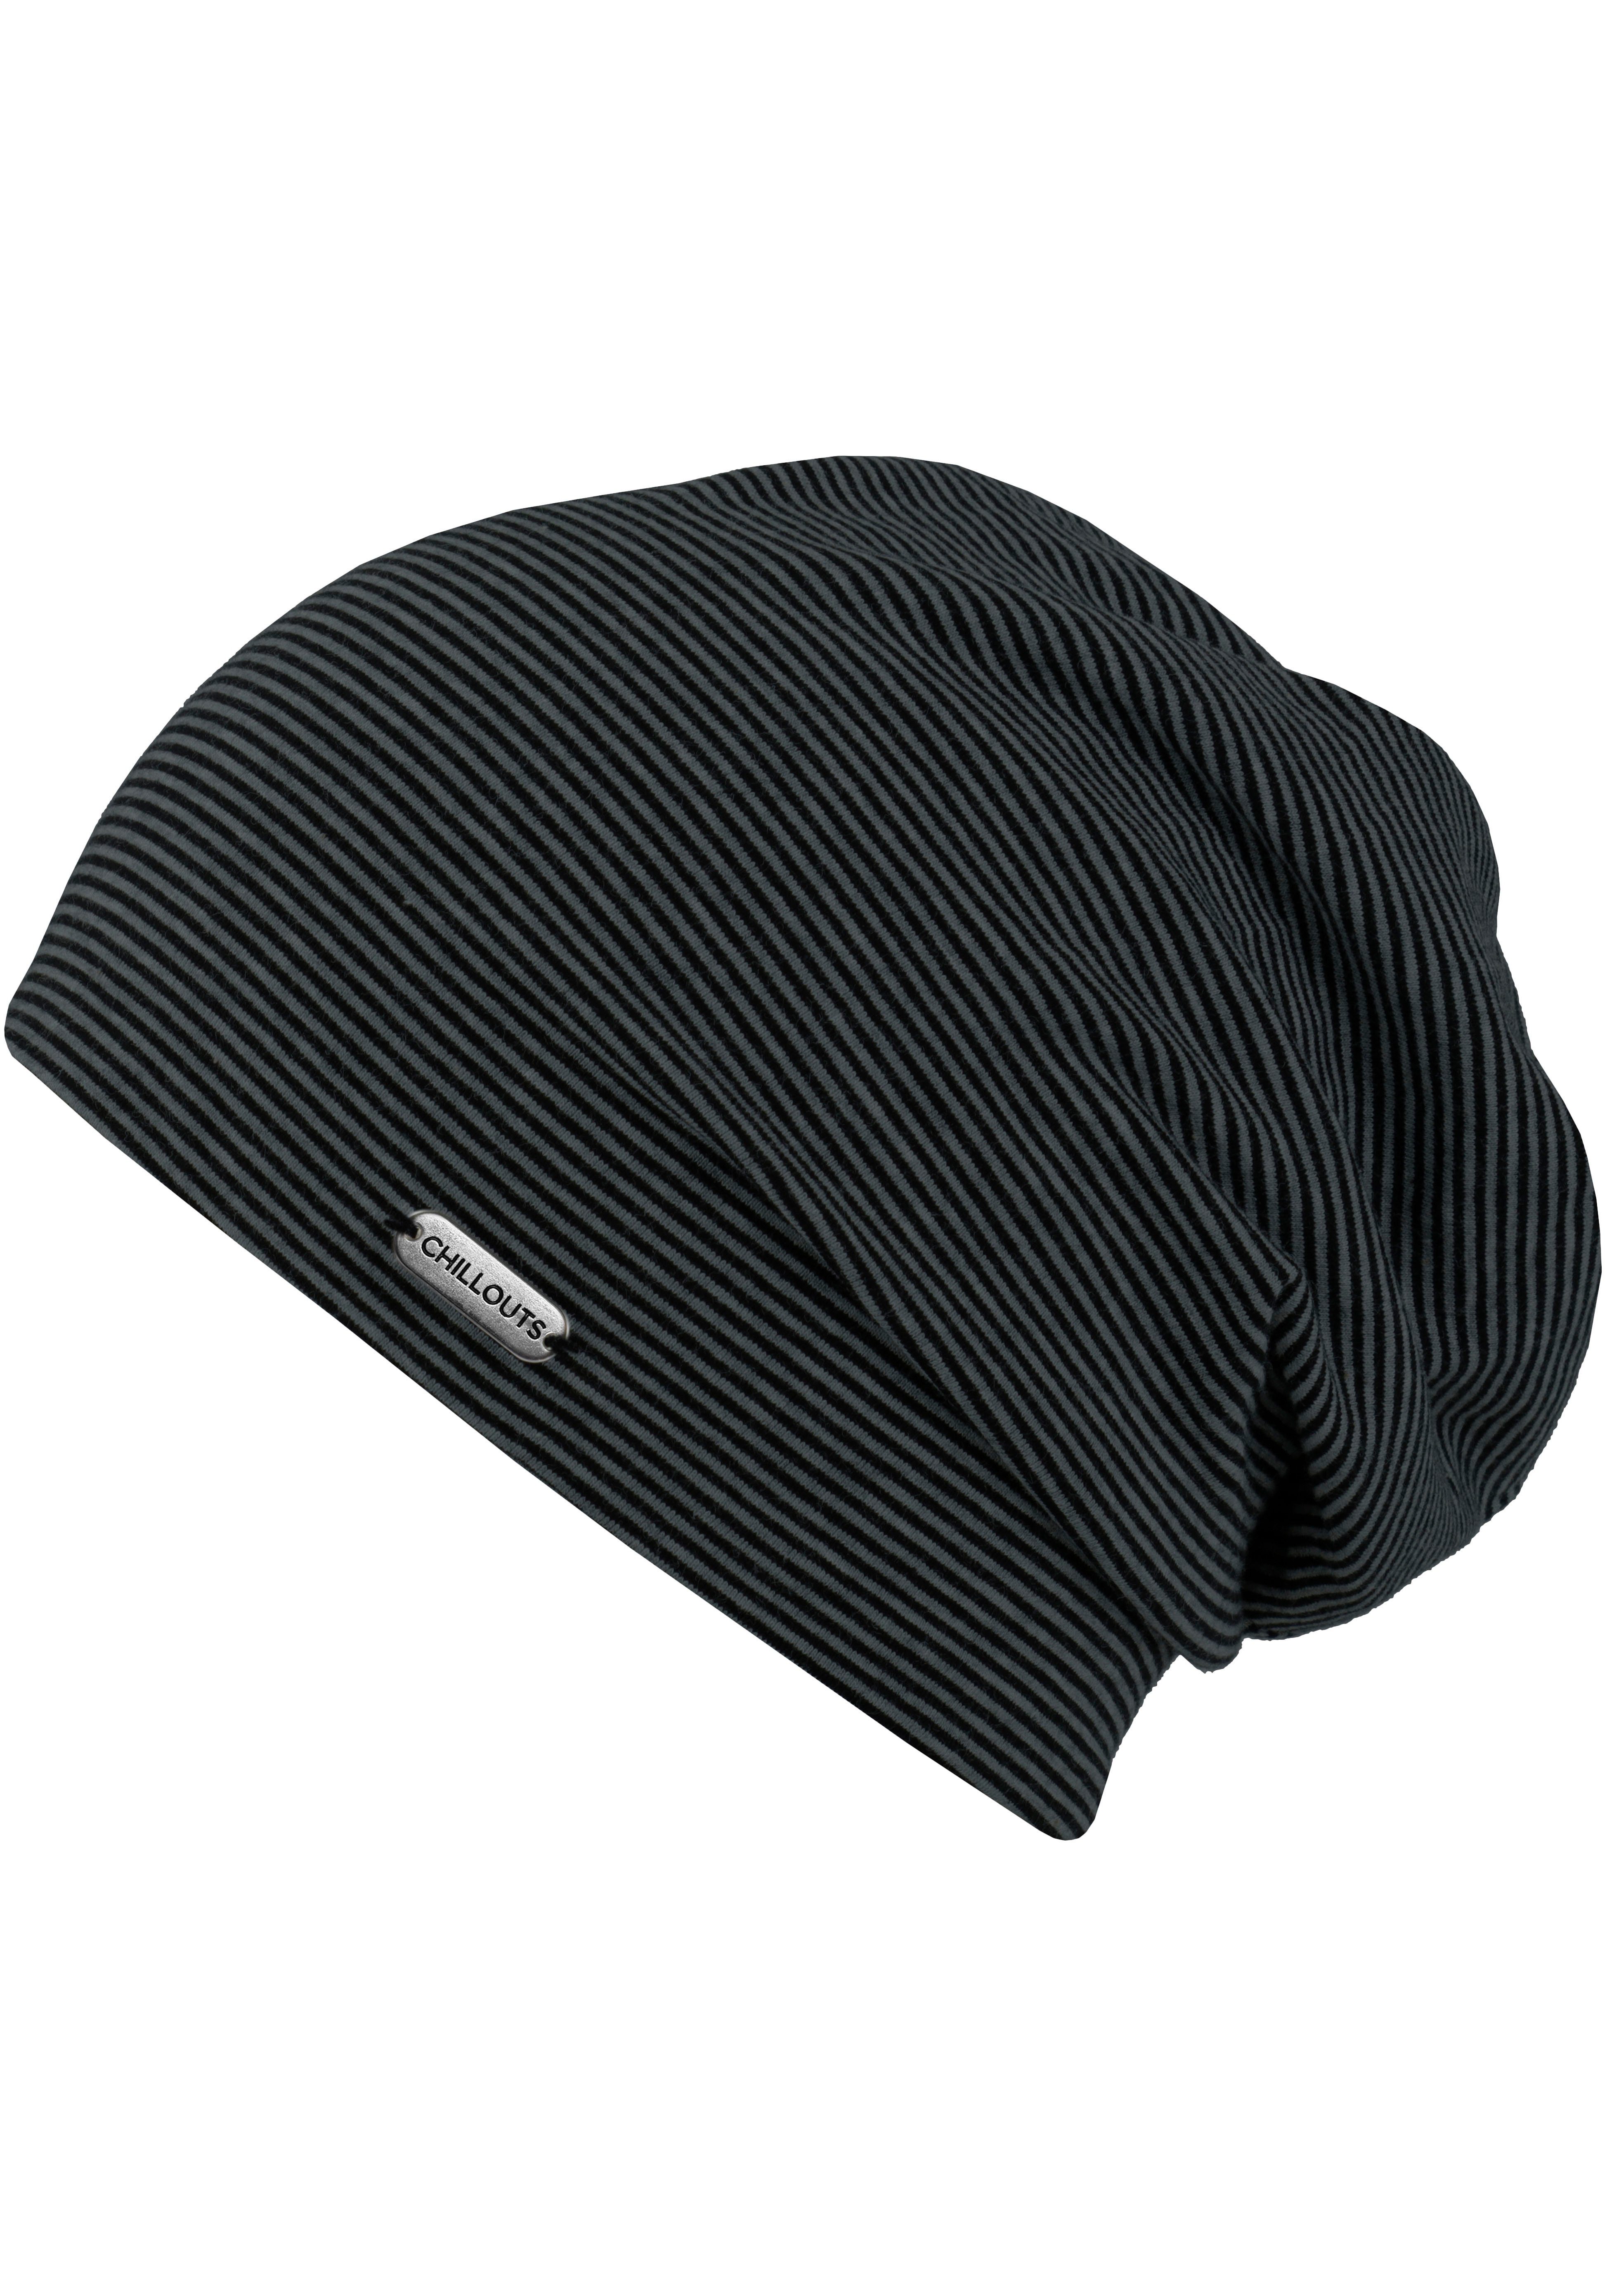 Pittsburgh Beanie Hat, gestreift dark chillouts grey-black